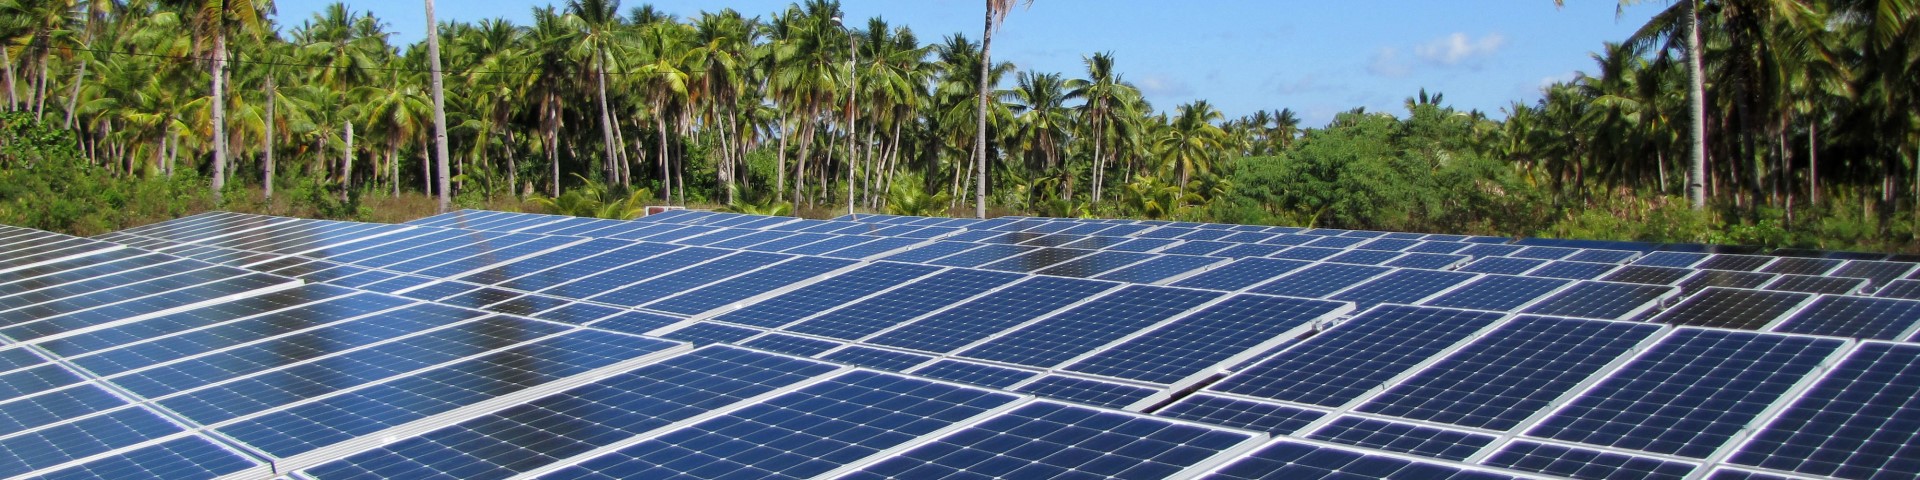 Mehrere Reihen Solarkollektoren im Globalen Süden mit Palmen im Hintergrund.